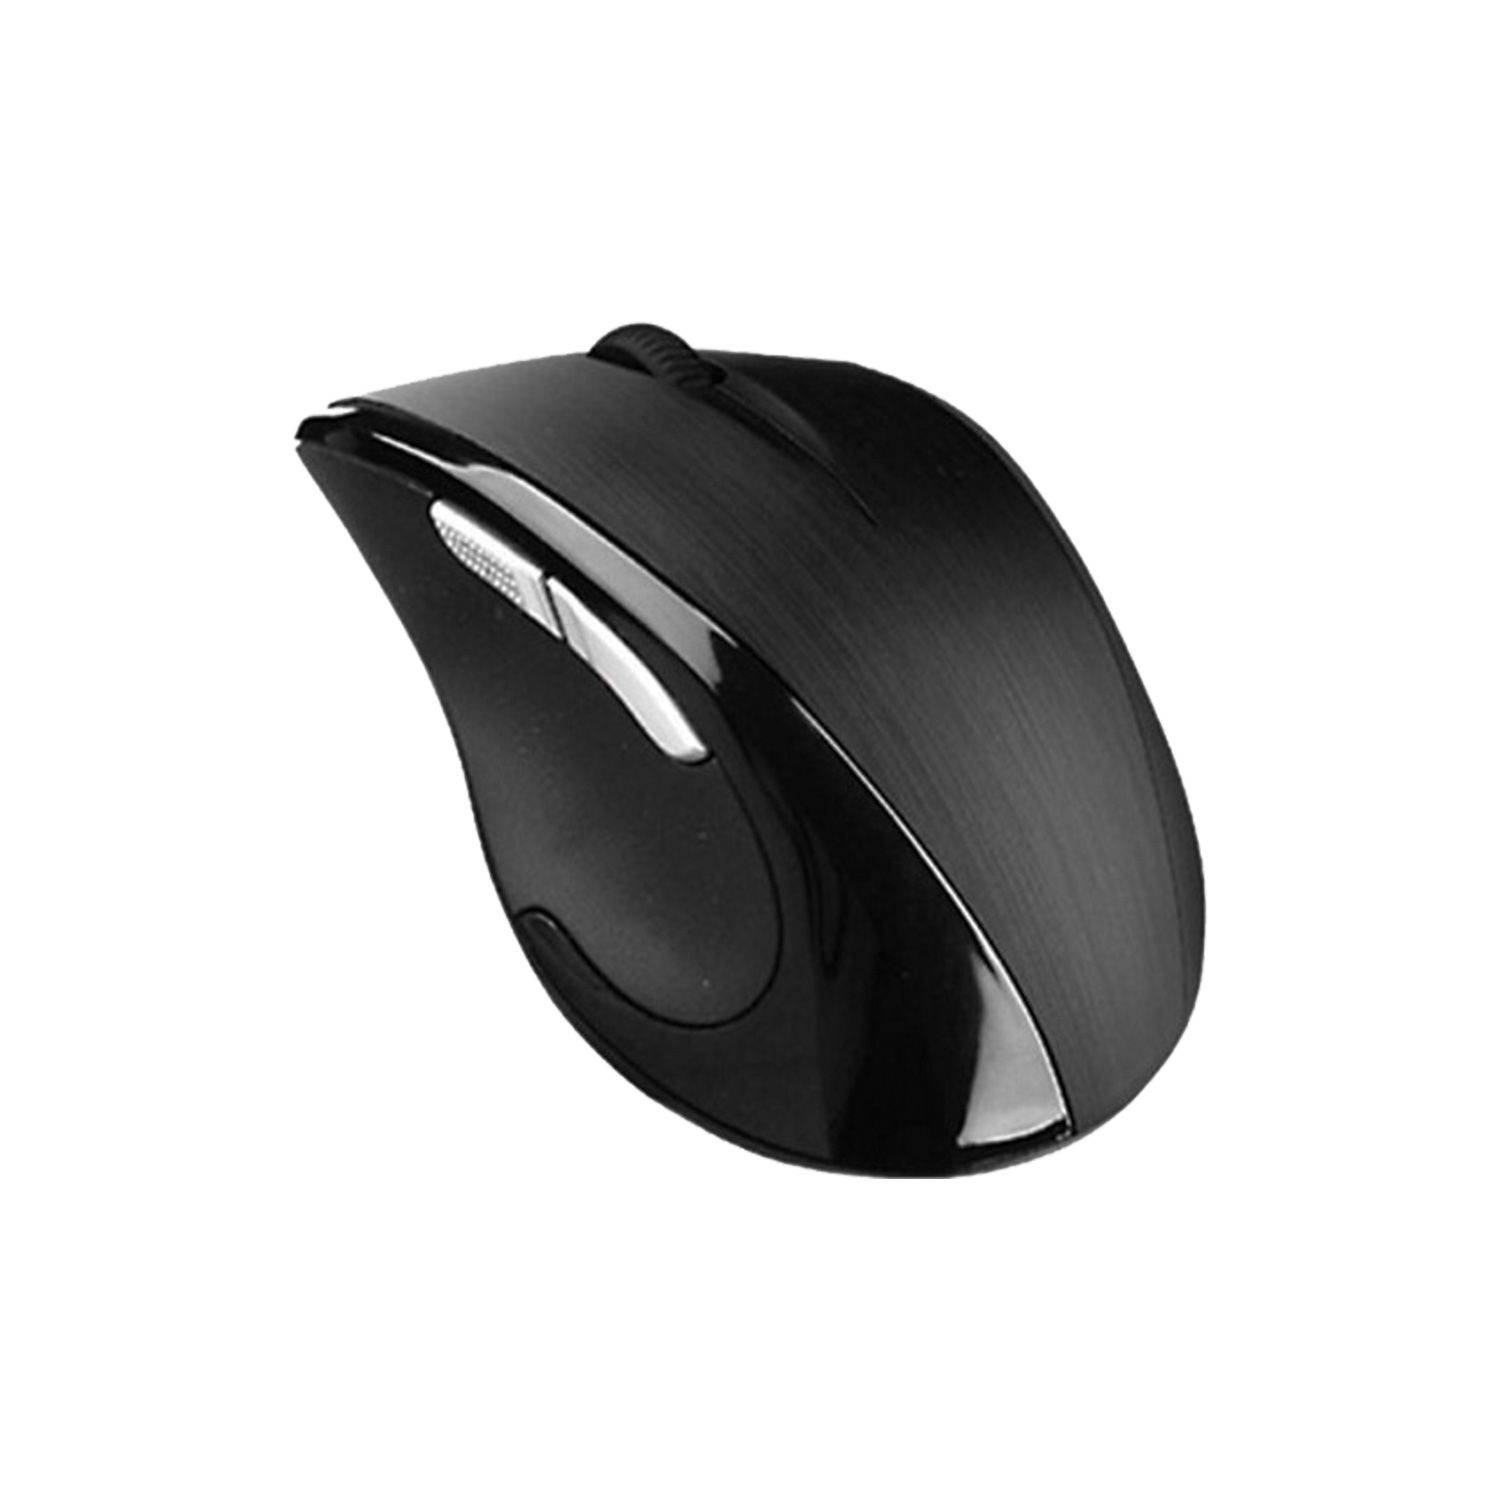 A4tech G7 750N Mouse%20(1)